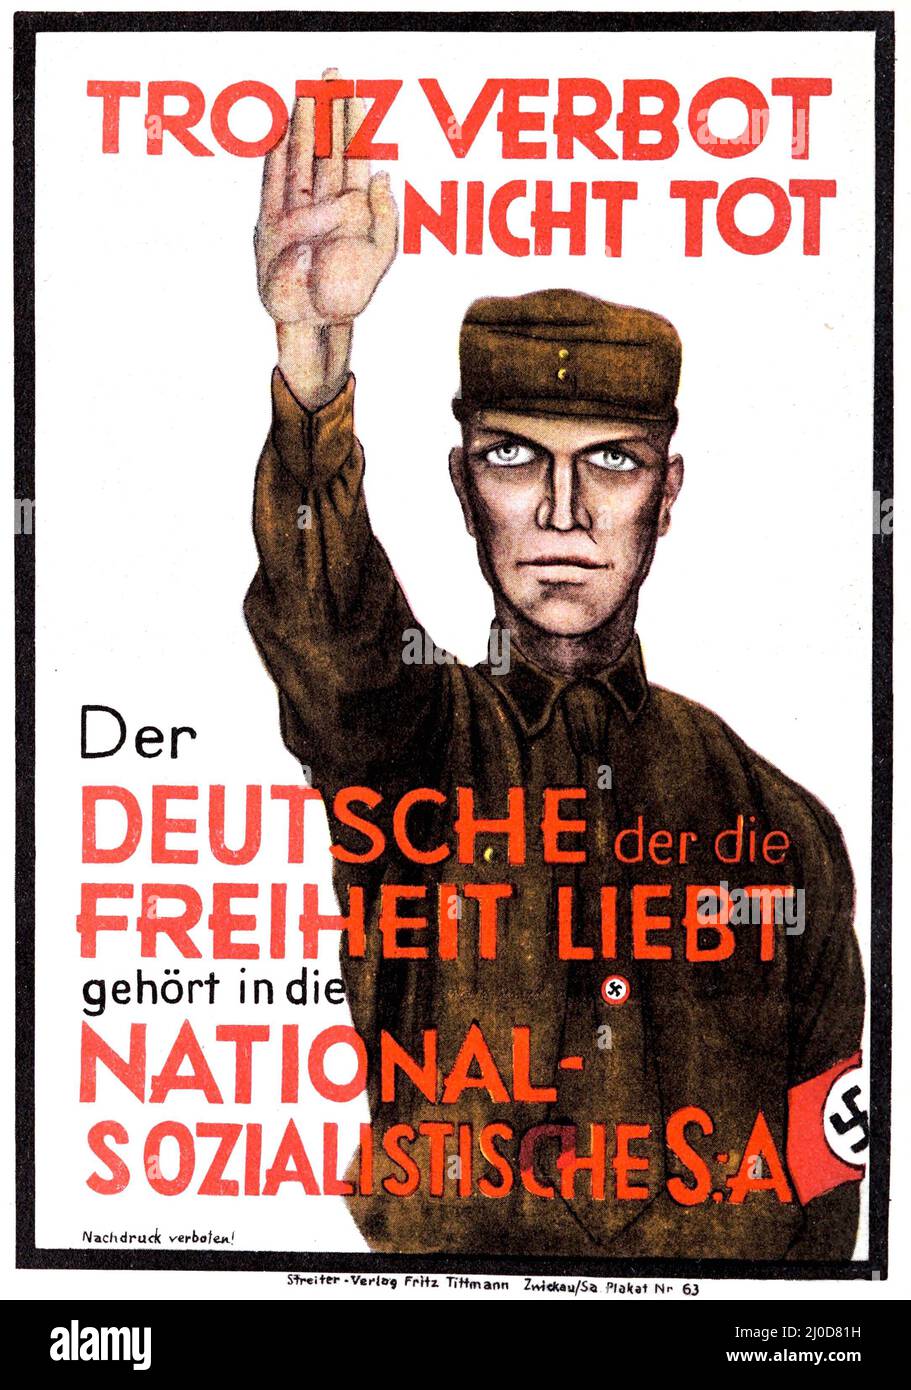 German Nazi propaganda, Election poster 1924. Der Deutsche der die Freihet liebt gehört in die Nationalsozialitische S.A. Unknown artist. Stock Photo